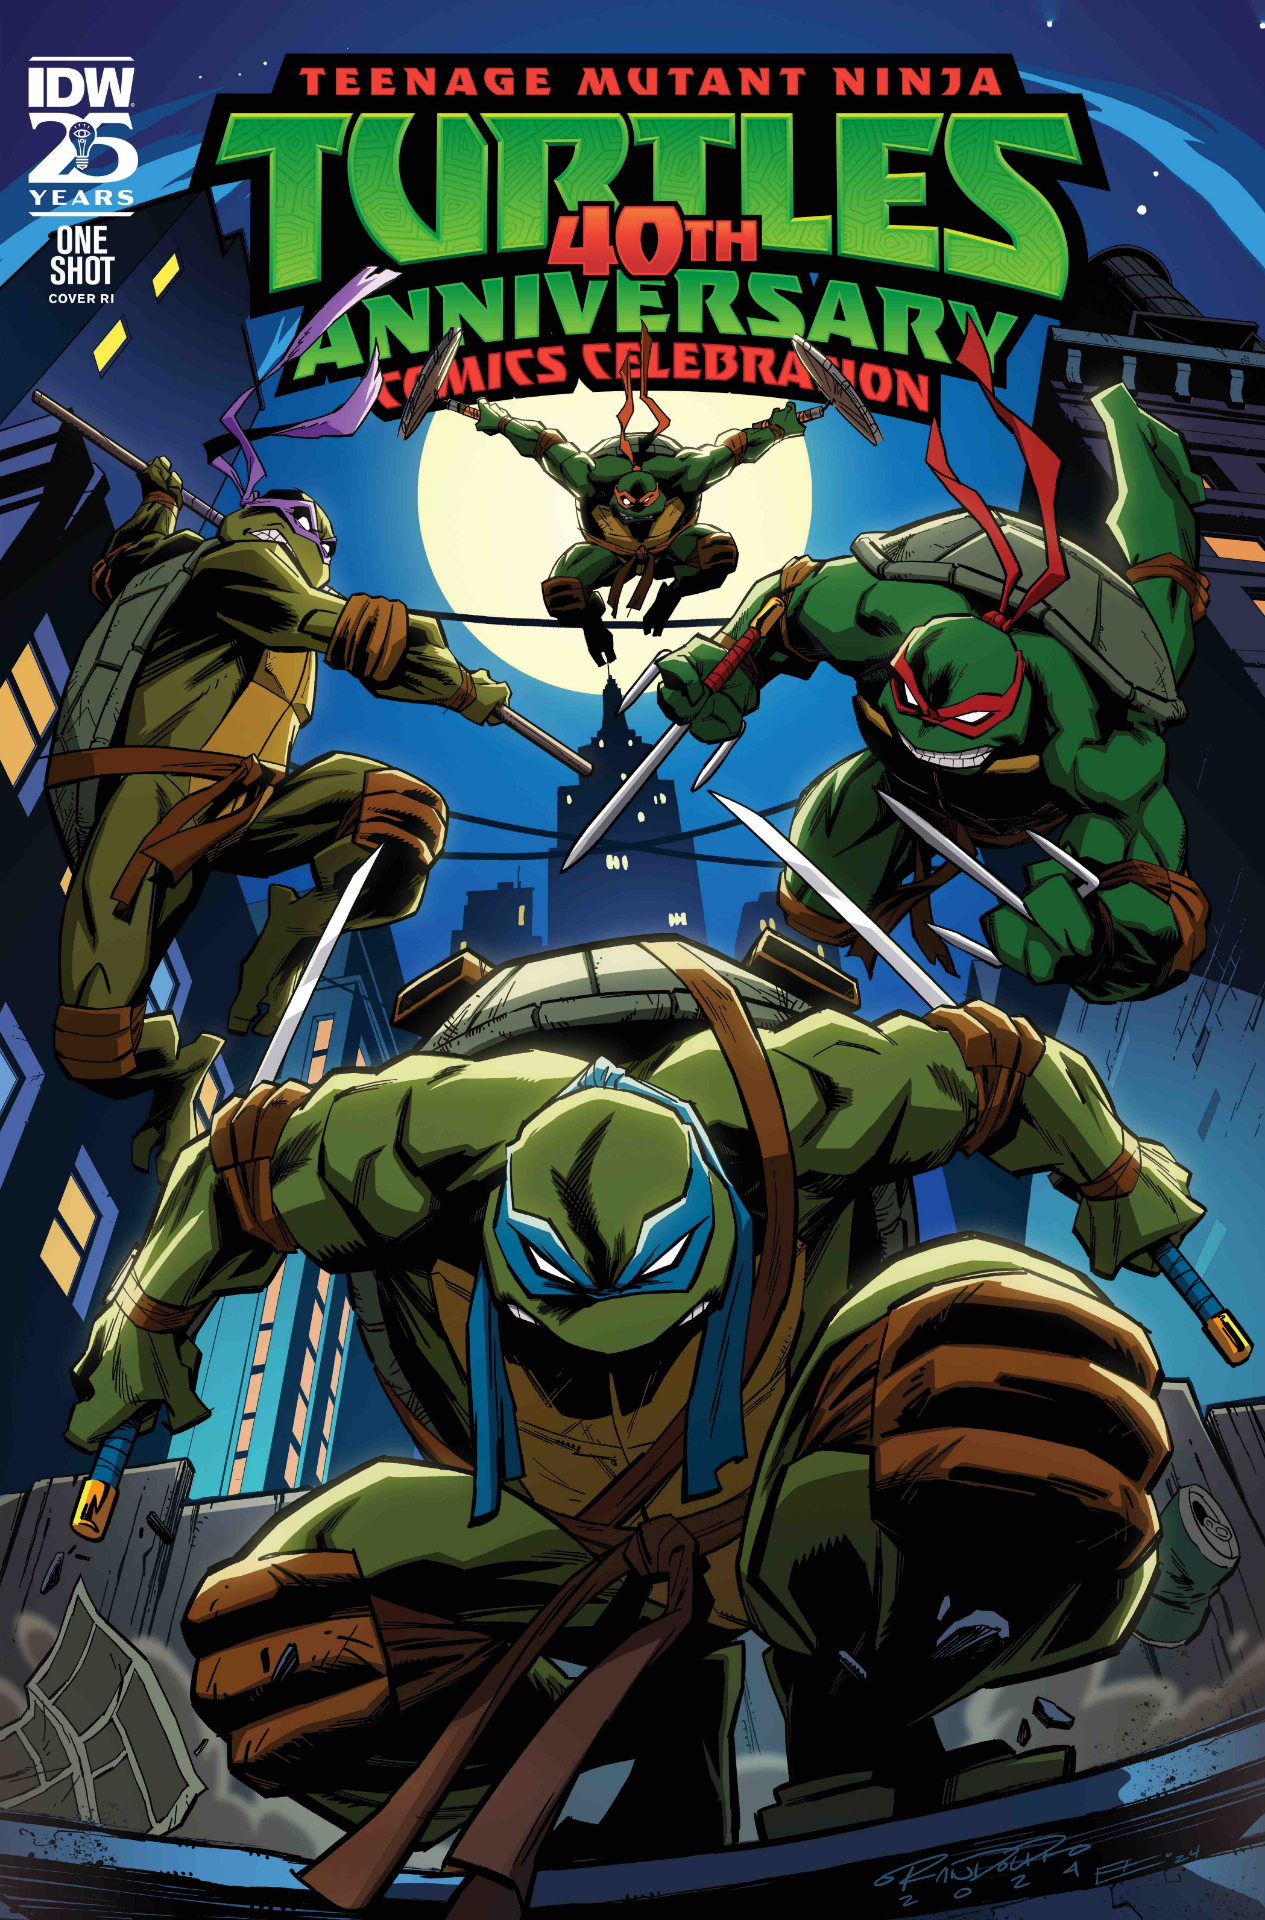 Teenage Mutant Ninja Turtles: 40th Anniversary Celebration